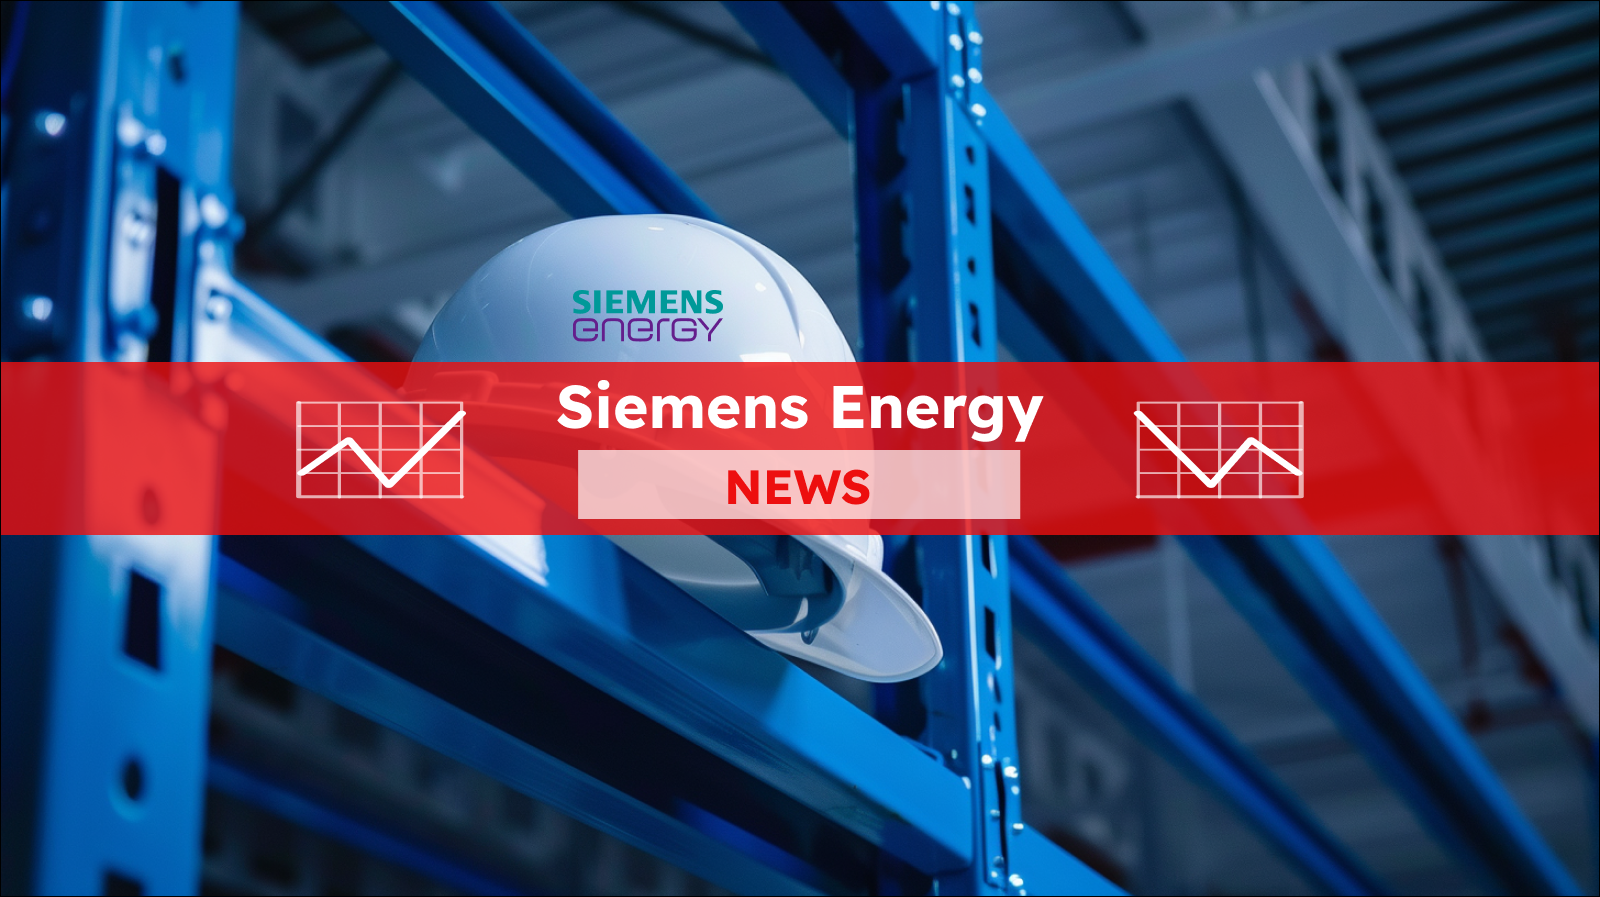 Ein weißer Schutzhelm, der an einem blauen Metallgestell hängt, mit einem roten Banner Siemens Energy NEWS